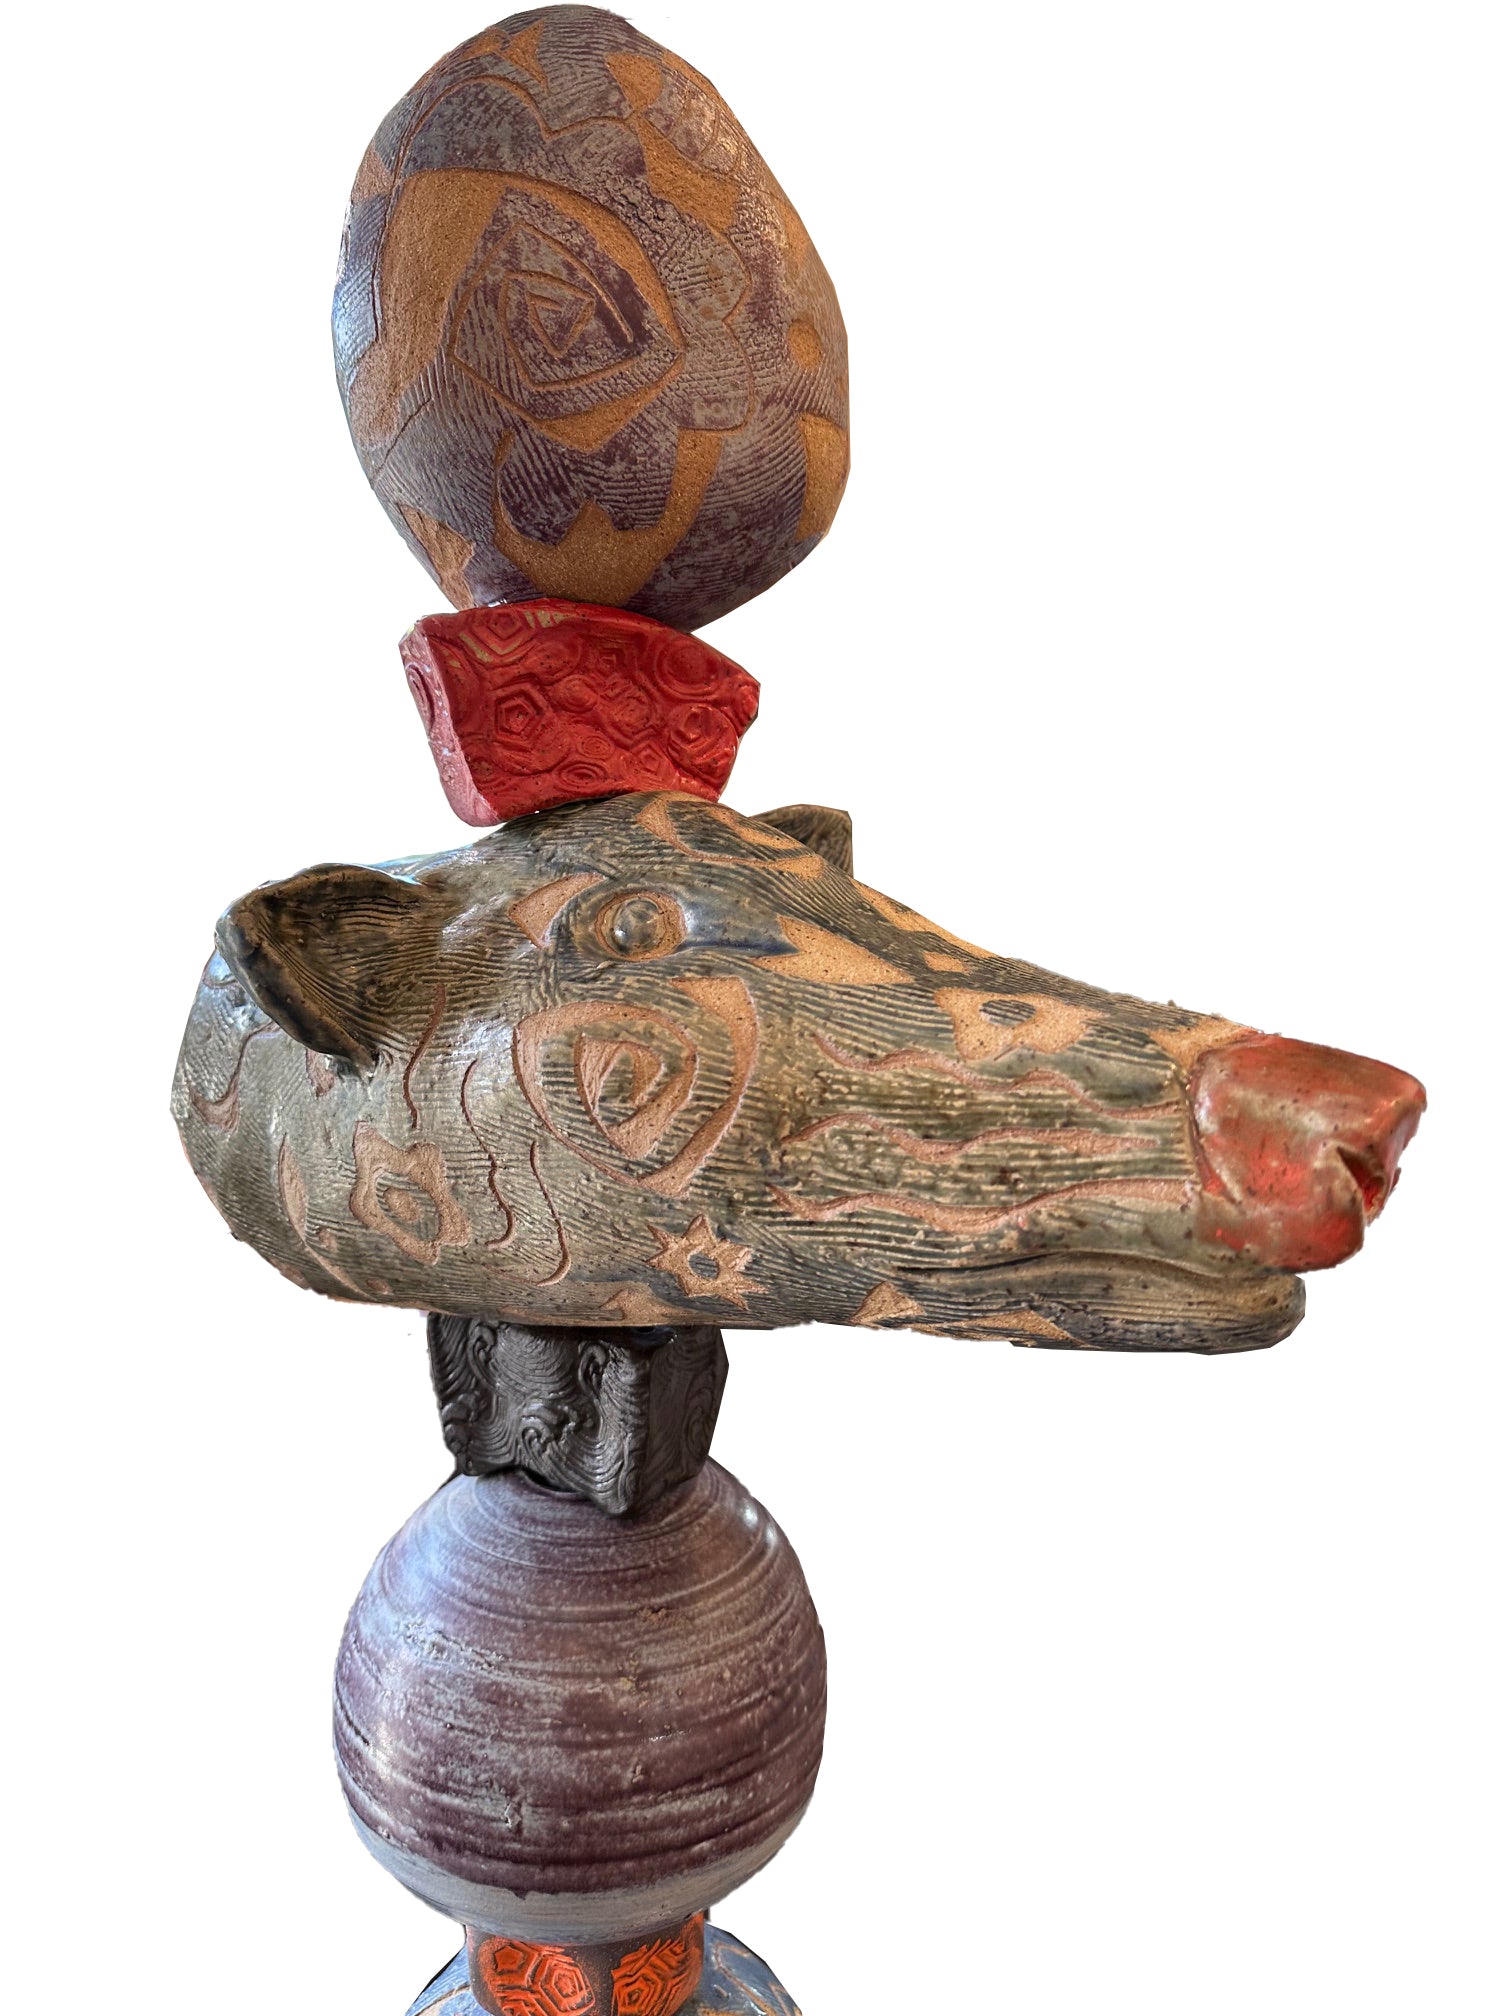 Medium Animal Totem, Original Sculpture Queen Baeleit Art